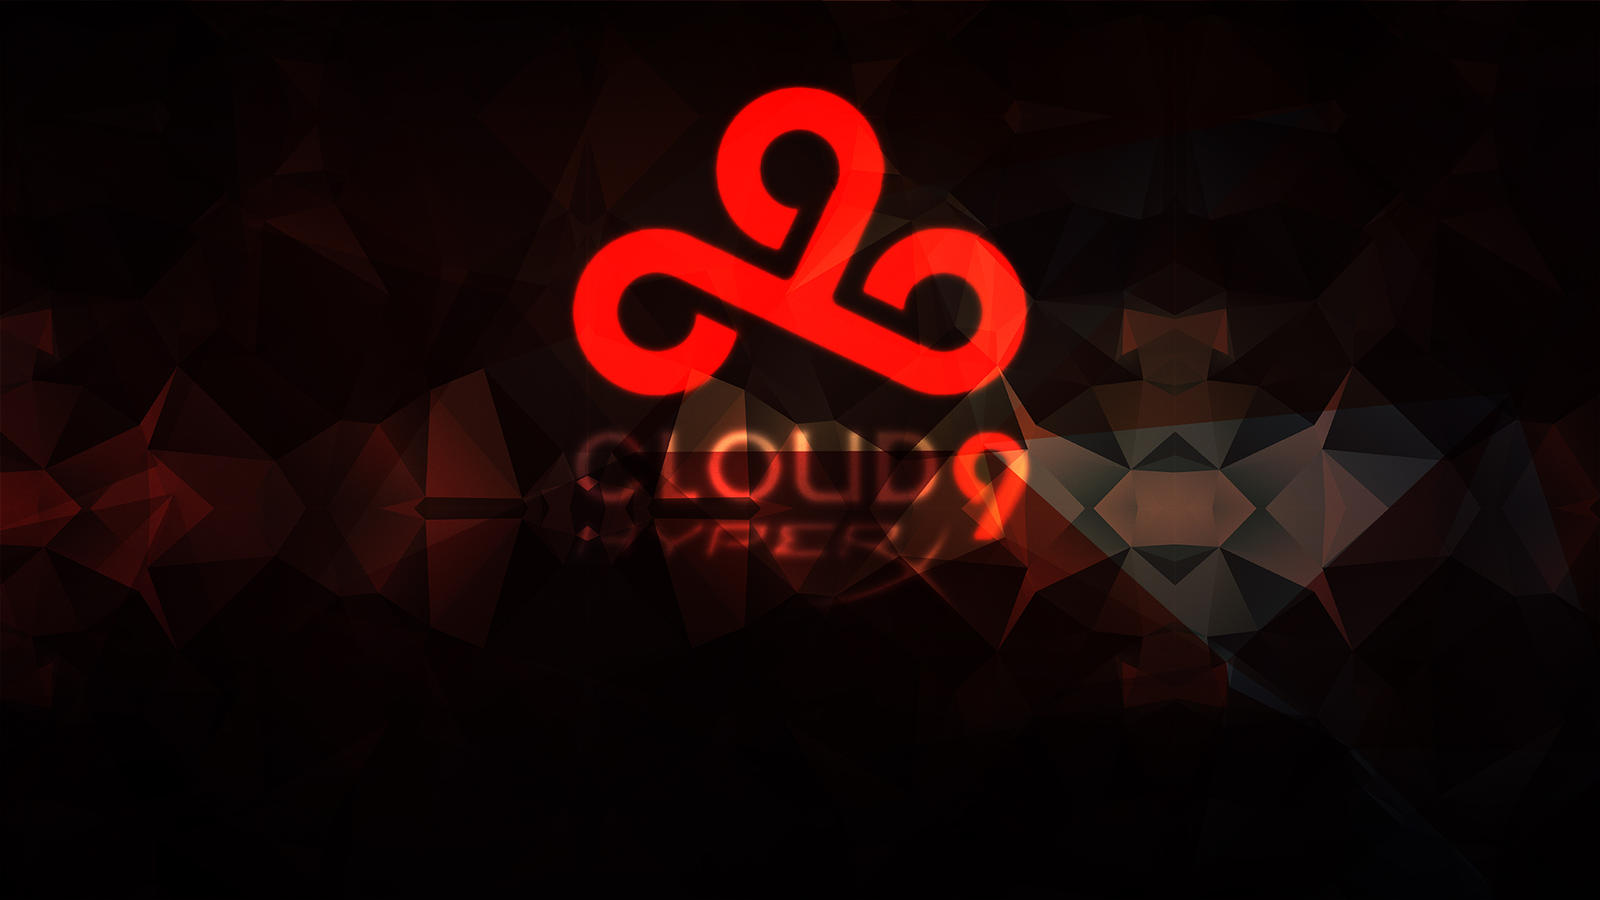 Cloud9 estatic. Клауд 9 красные. Cloud9 знак. Клауд найн фон. Логотип cloud9.